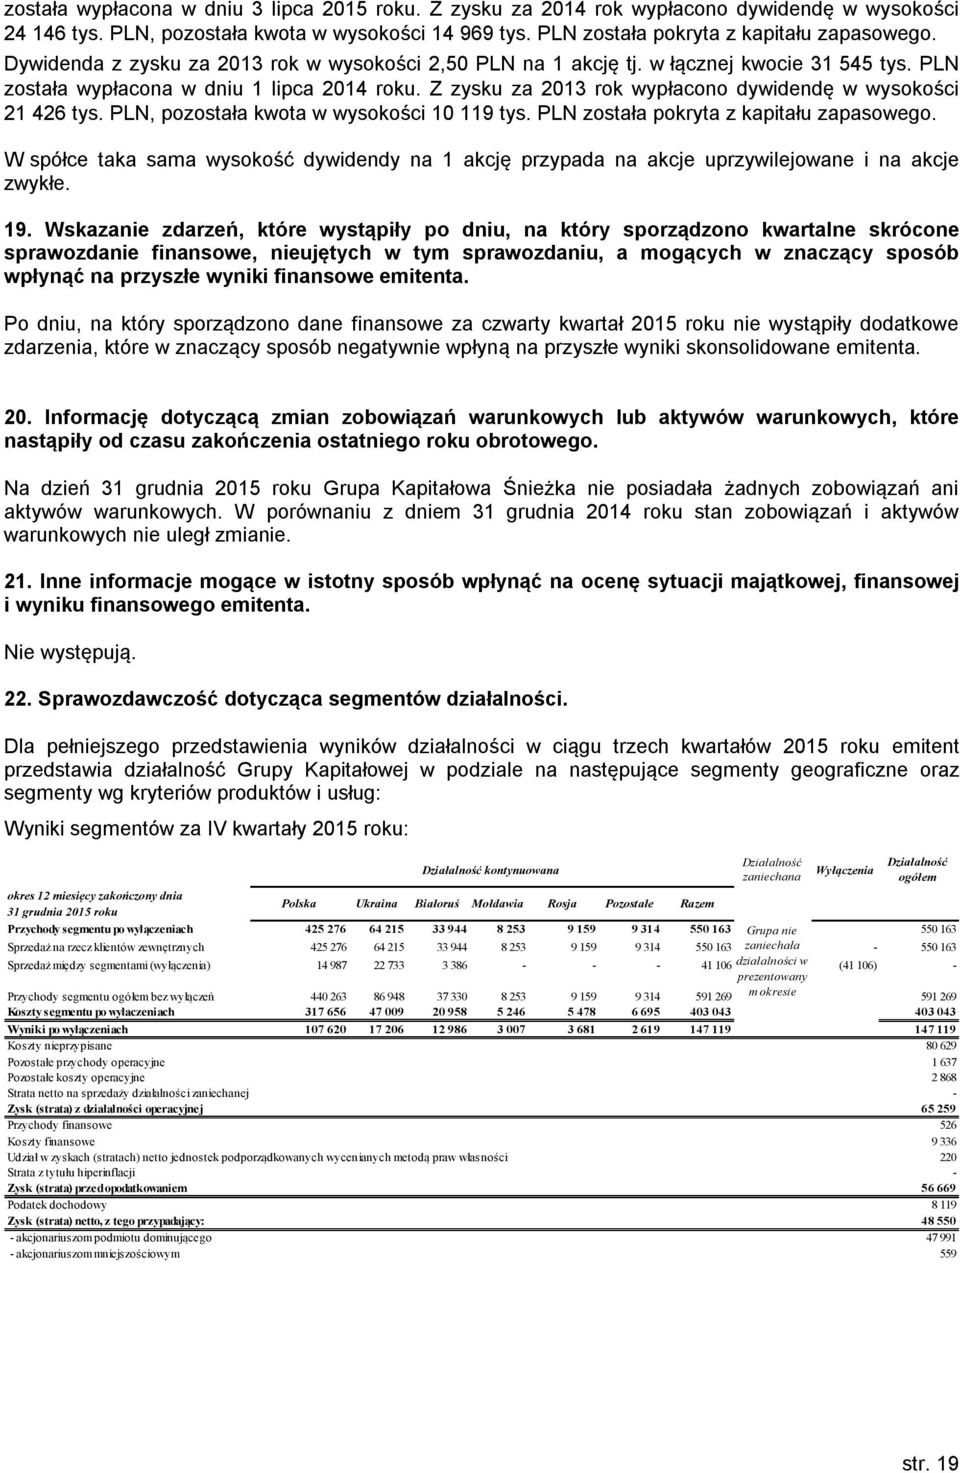 Z zysku za 2013 rok wypłacono dywidendę w wysokości 21 426 tys. PLN, pozostała kwota w wysokości 10 119 tys. PLN została pokryta z kapitału zapasowego.